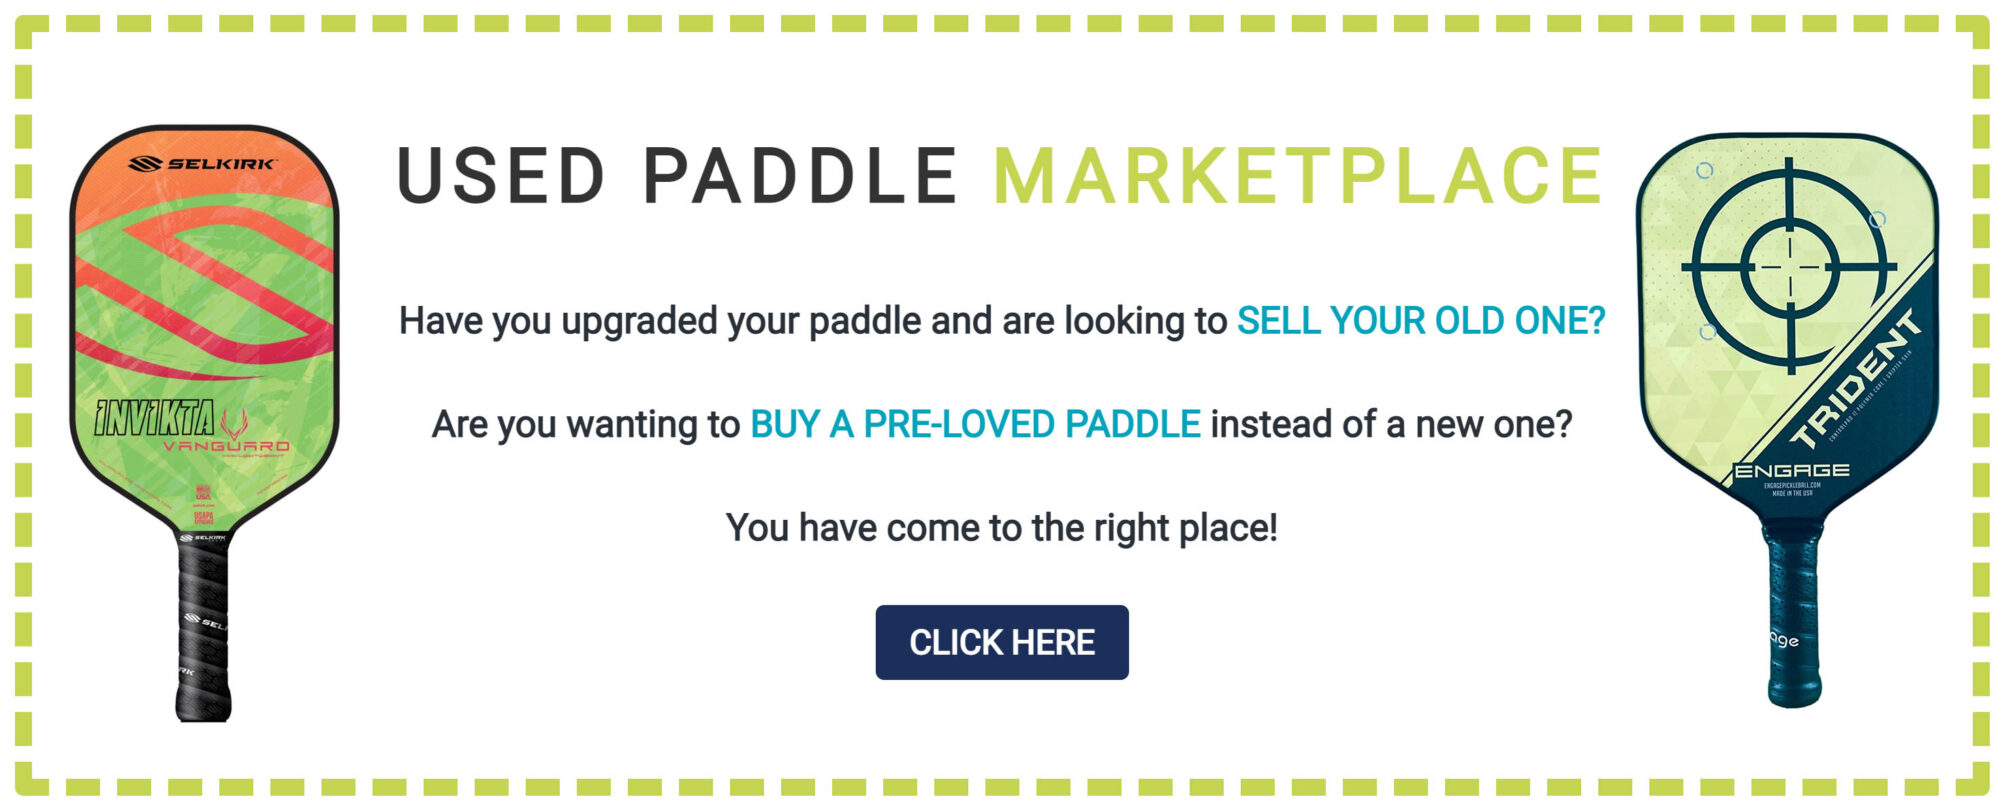 Used paddle marketplace